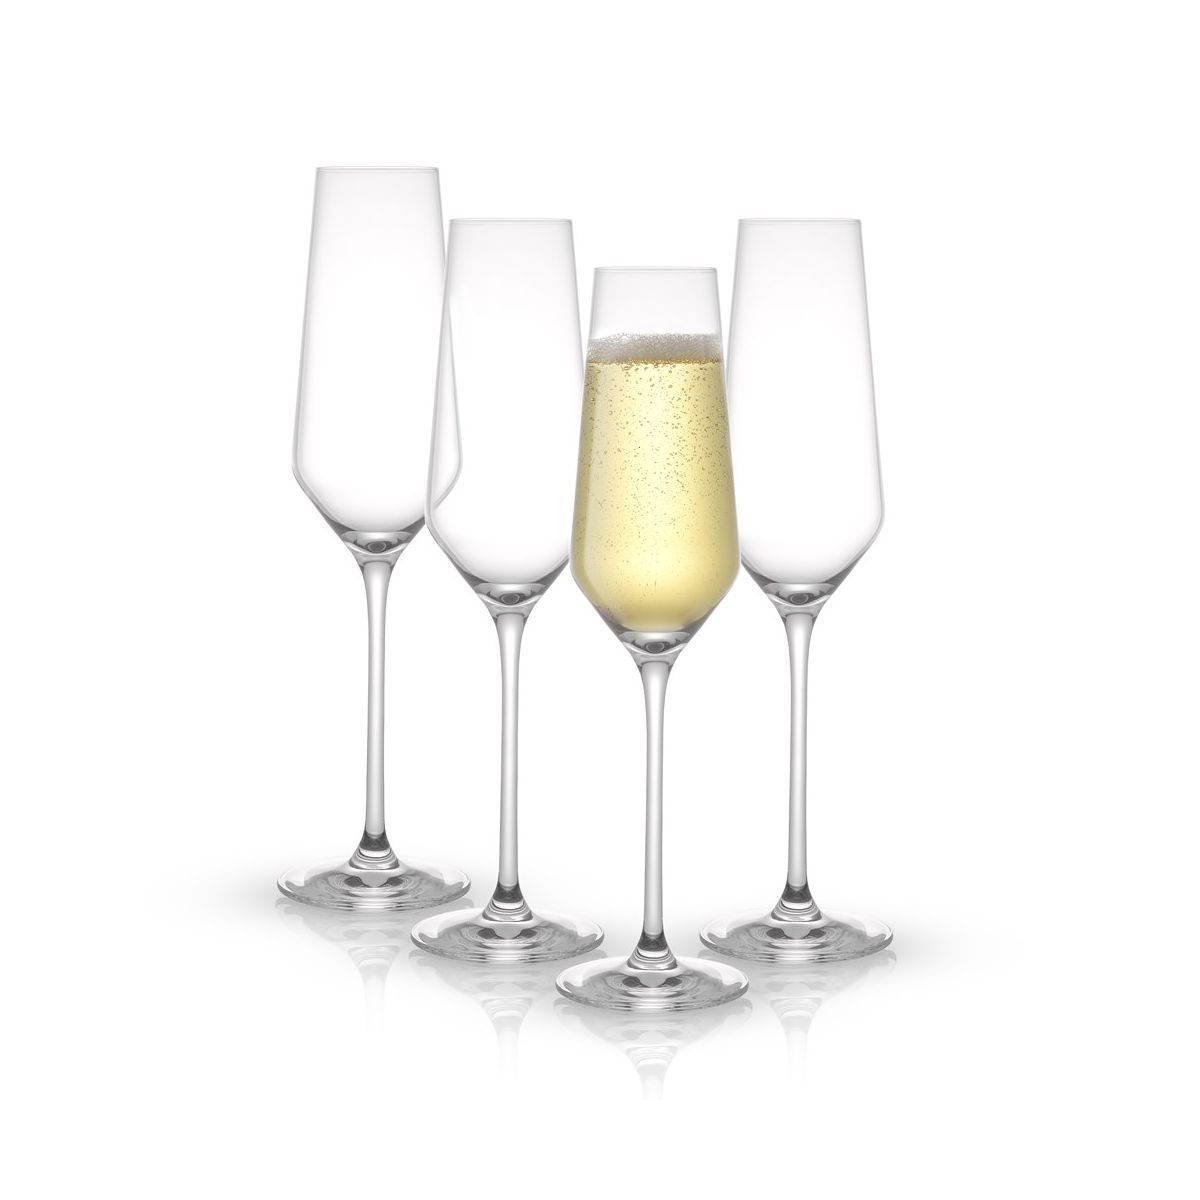 JoyJolt Layla Crystal Champagne Flute Glasses - Set of 4 Champagne Glasses – 6.7 oz | Target